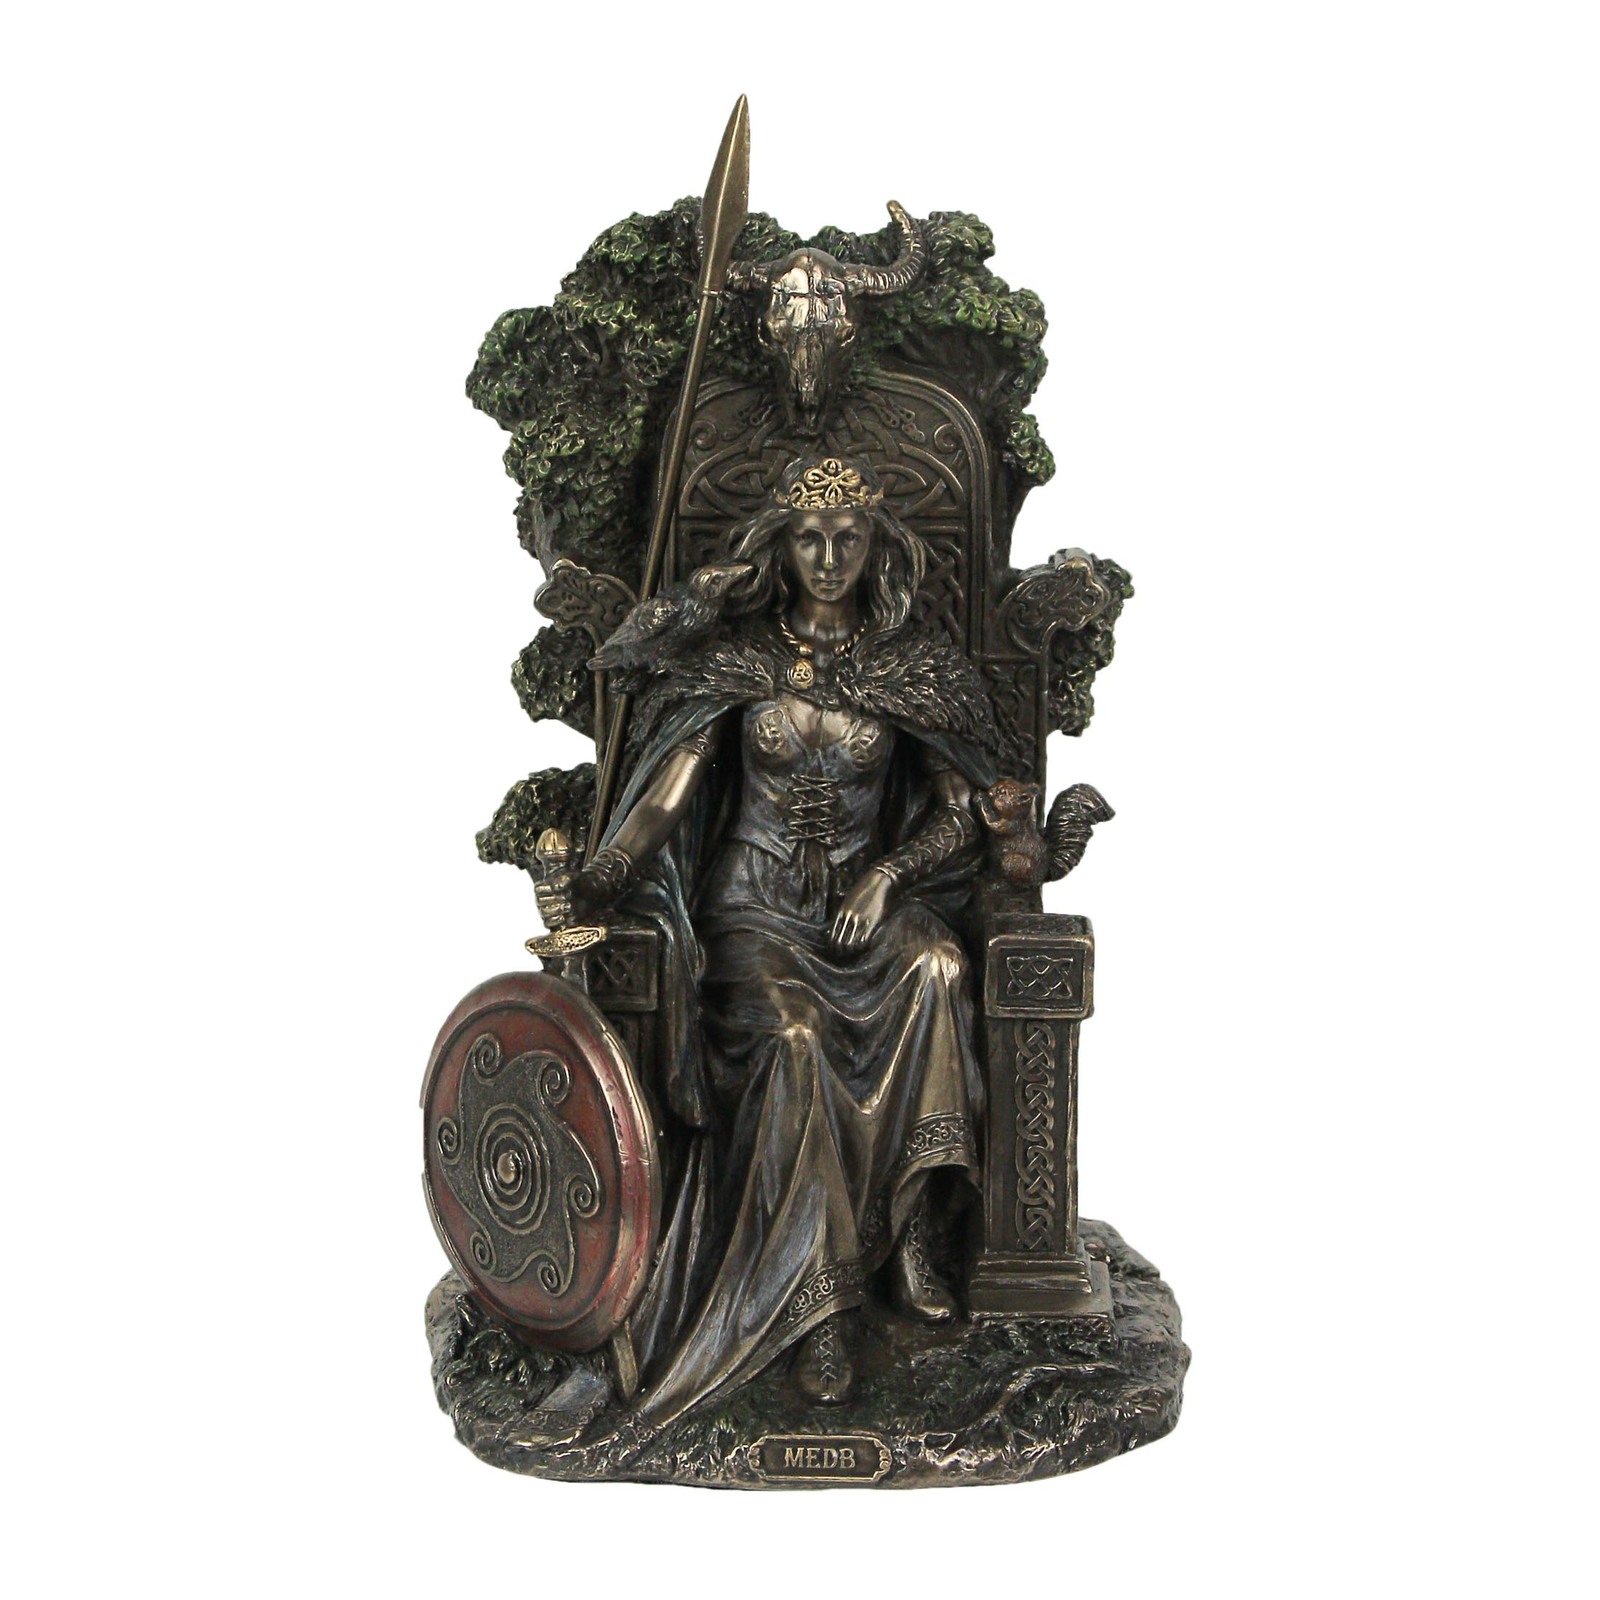 Medb, Queen of Connacht Cast Resin Statue Bronze Finish Home Decor Sculpture Art - $88.20